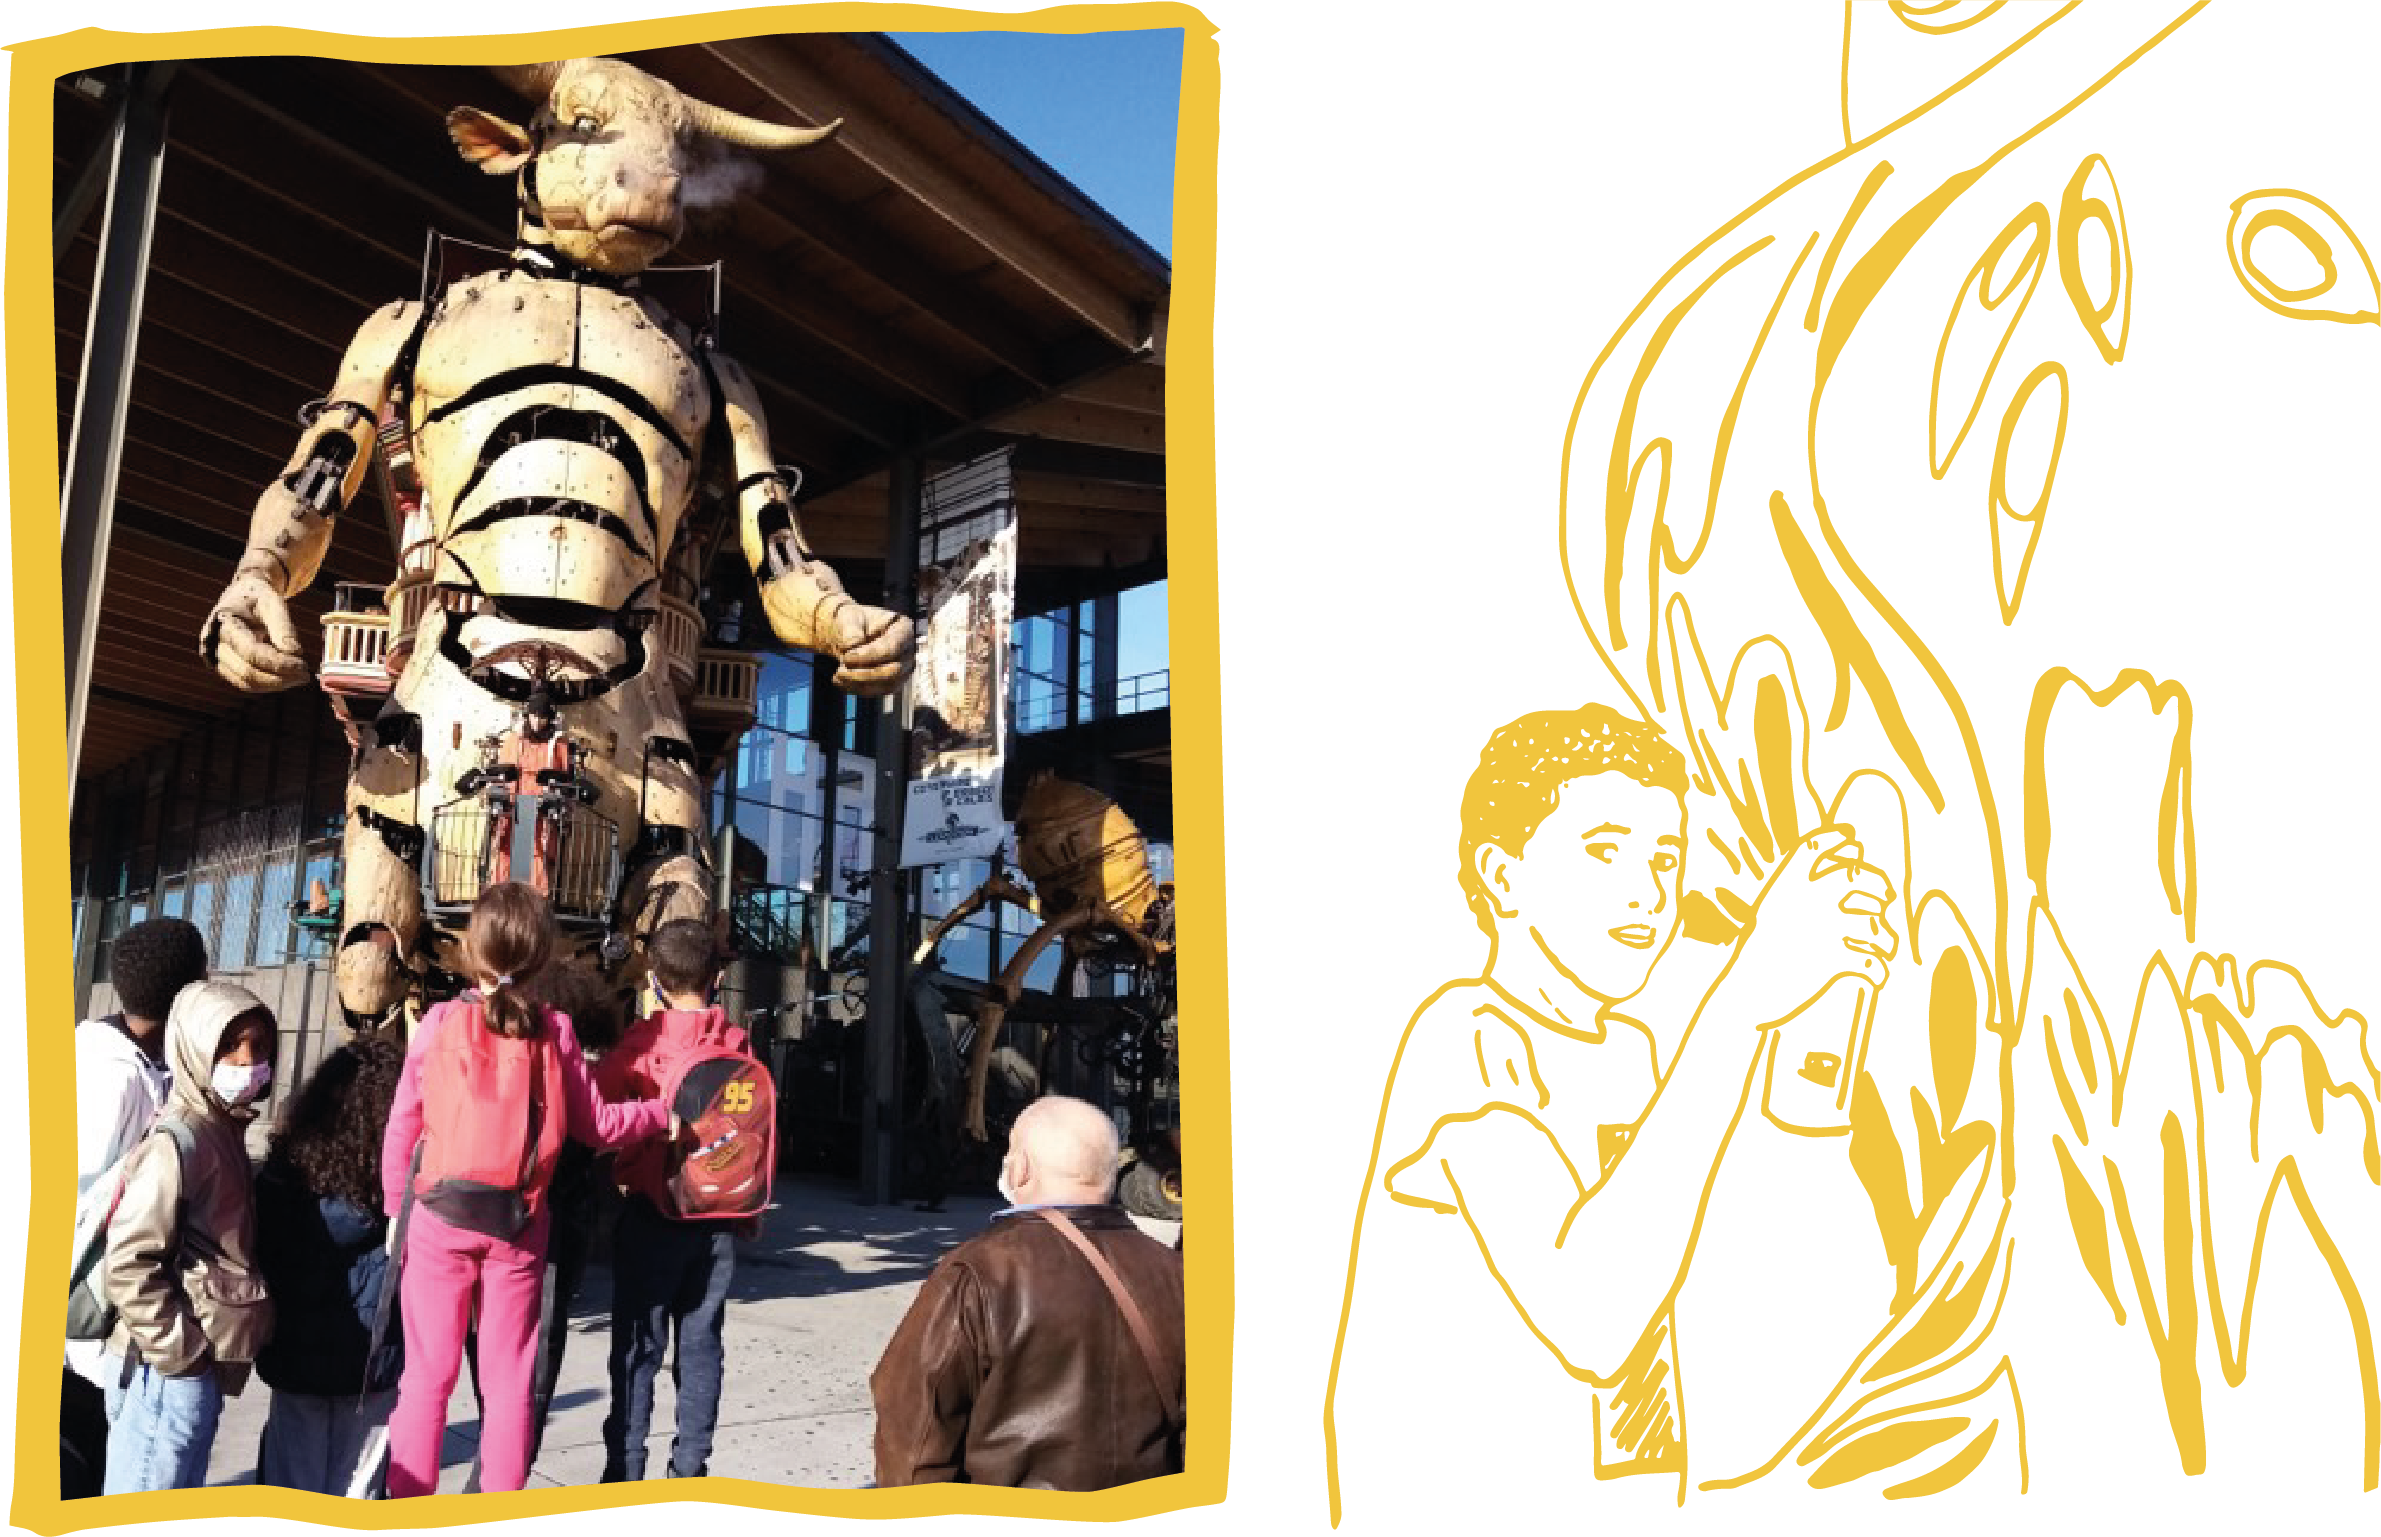 Sur la gauche du visuel une photo du minautore de la Halle des machines avec des enfants à ses pieds. Sur la droite, un dessin au trait d'une enfant en train de faire un tag à la bombe de peinture sur un mur.